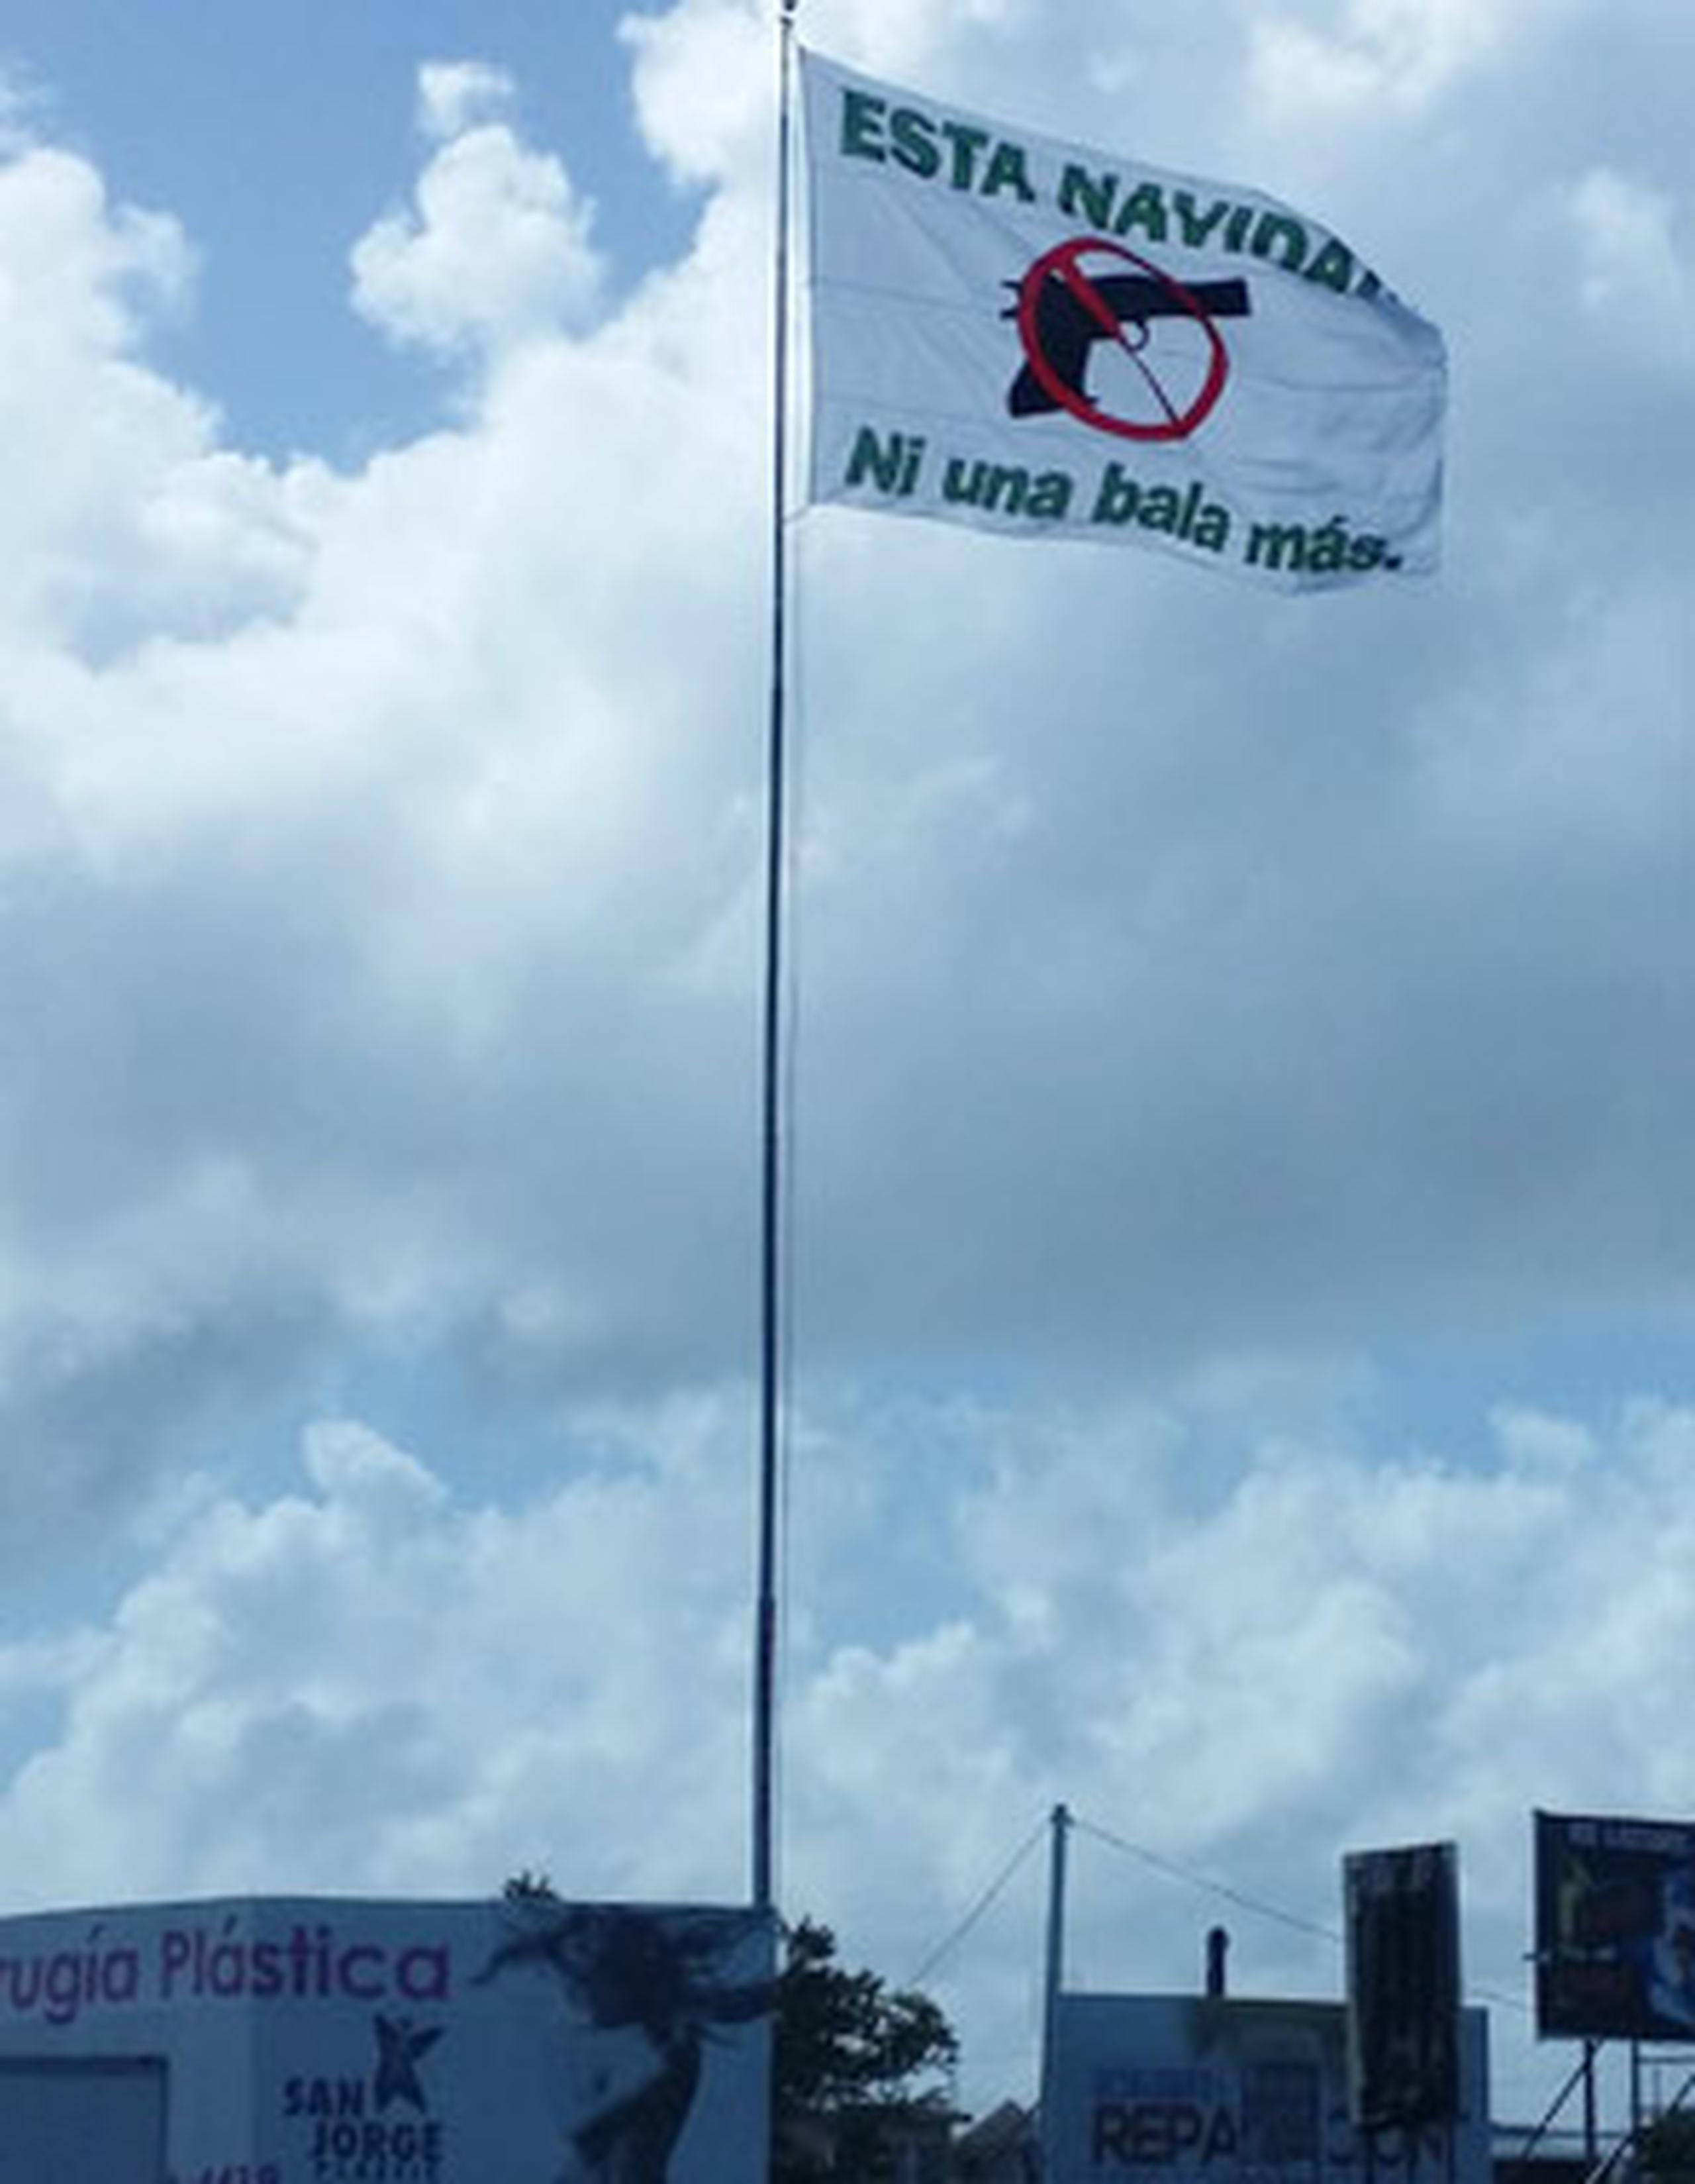 El mensaje en la bandera que está ubicada en la Autopista 22 de San Juan dice: “Esta Navidad ni una bala más”. (Suministrada)